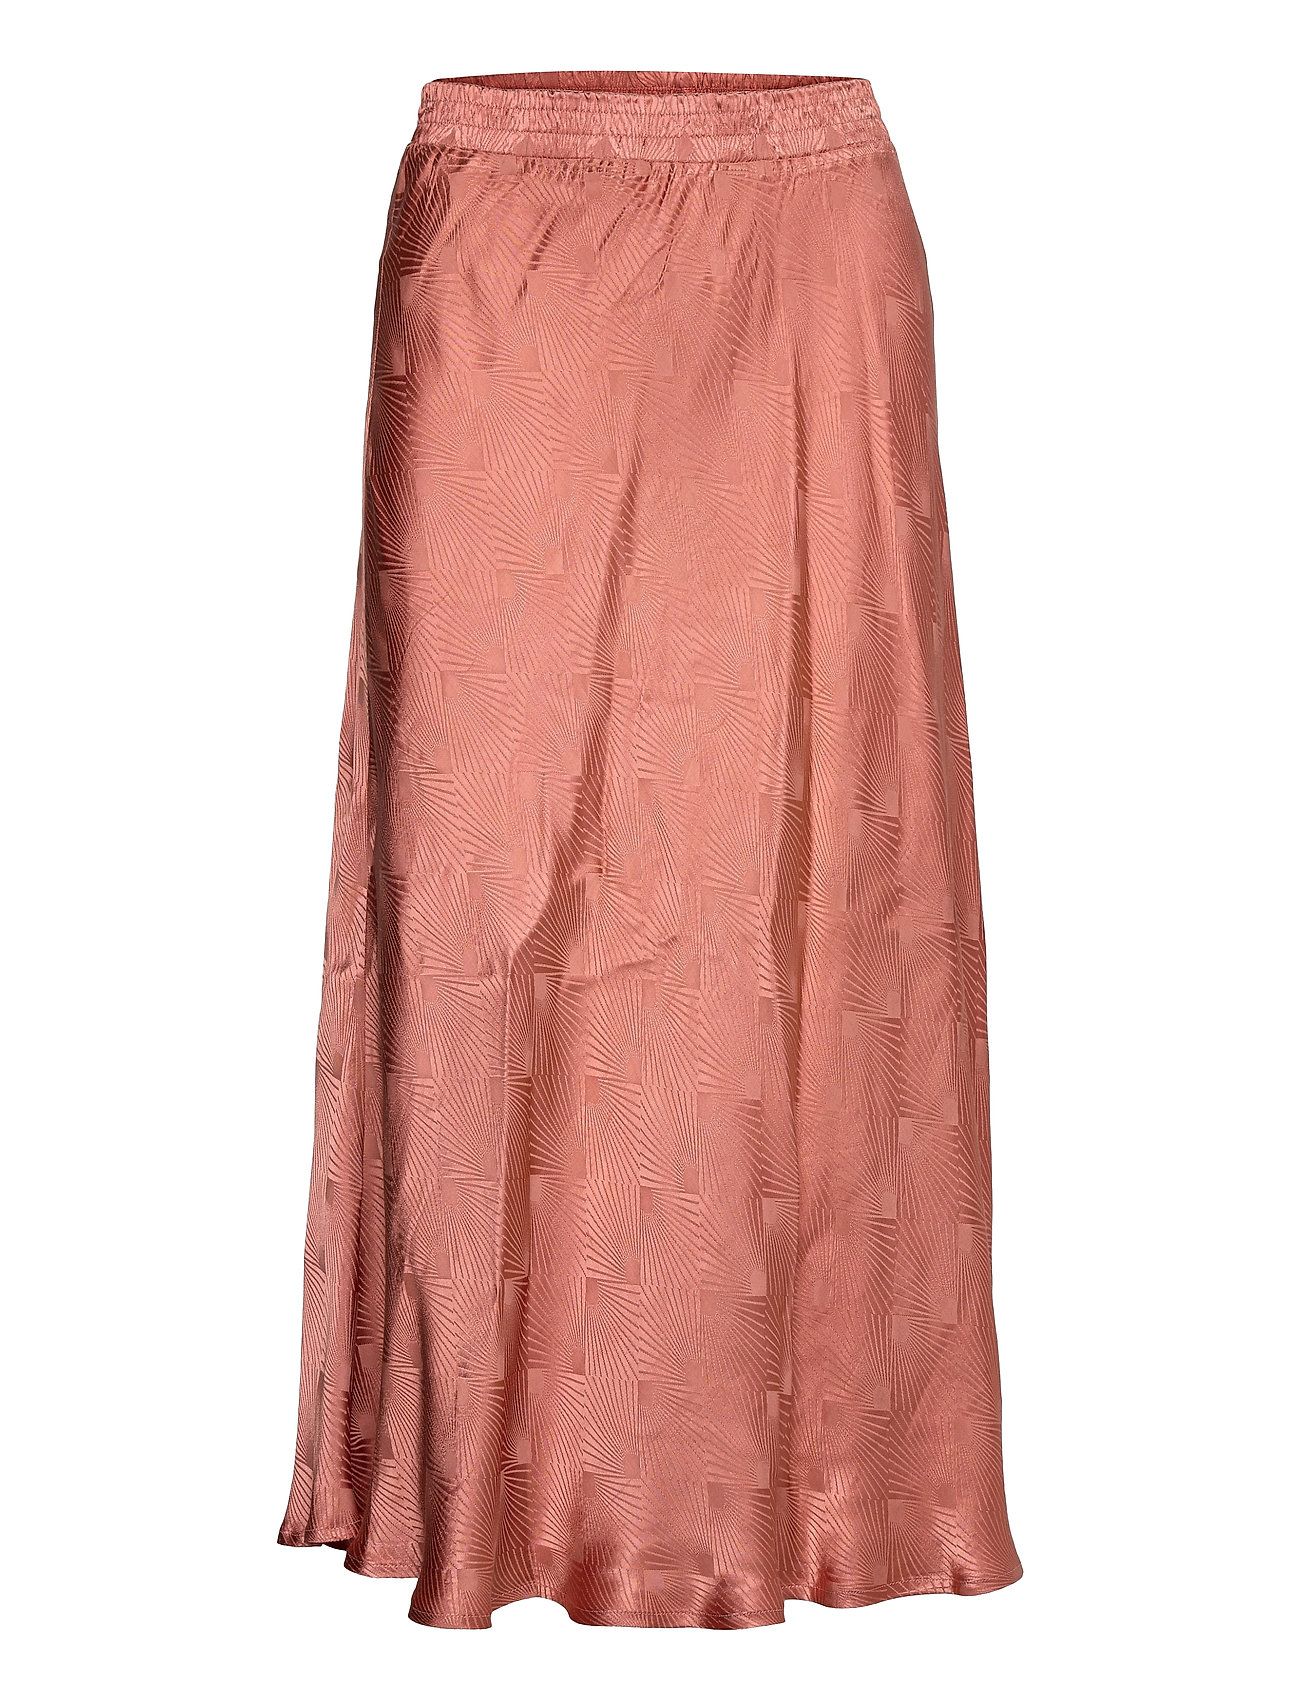 Coster Copenhagen Draped Skirt With Bias Cut (Tanned Brick), 215.76 kr | Stort af designer mærker | Booztlet.com